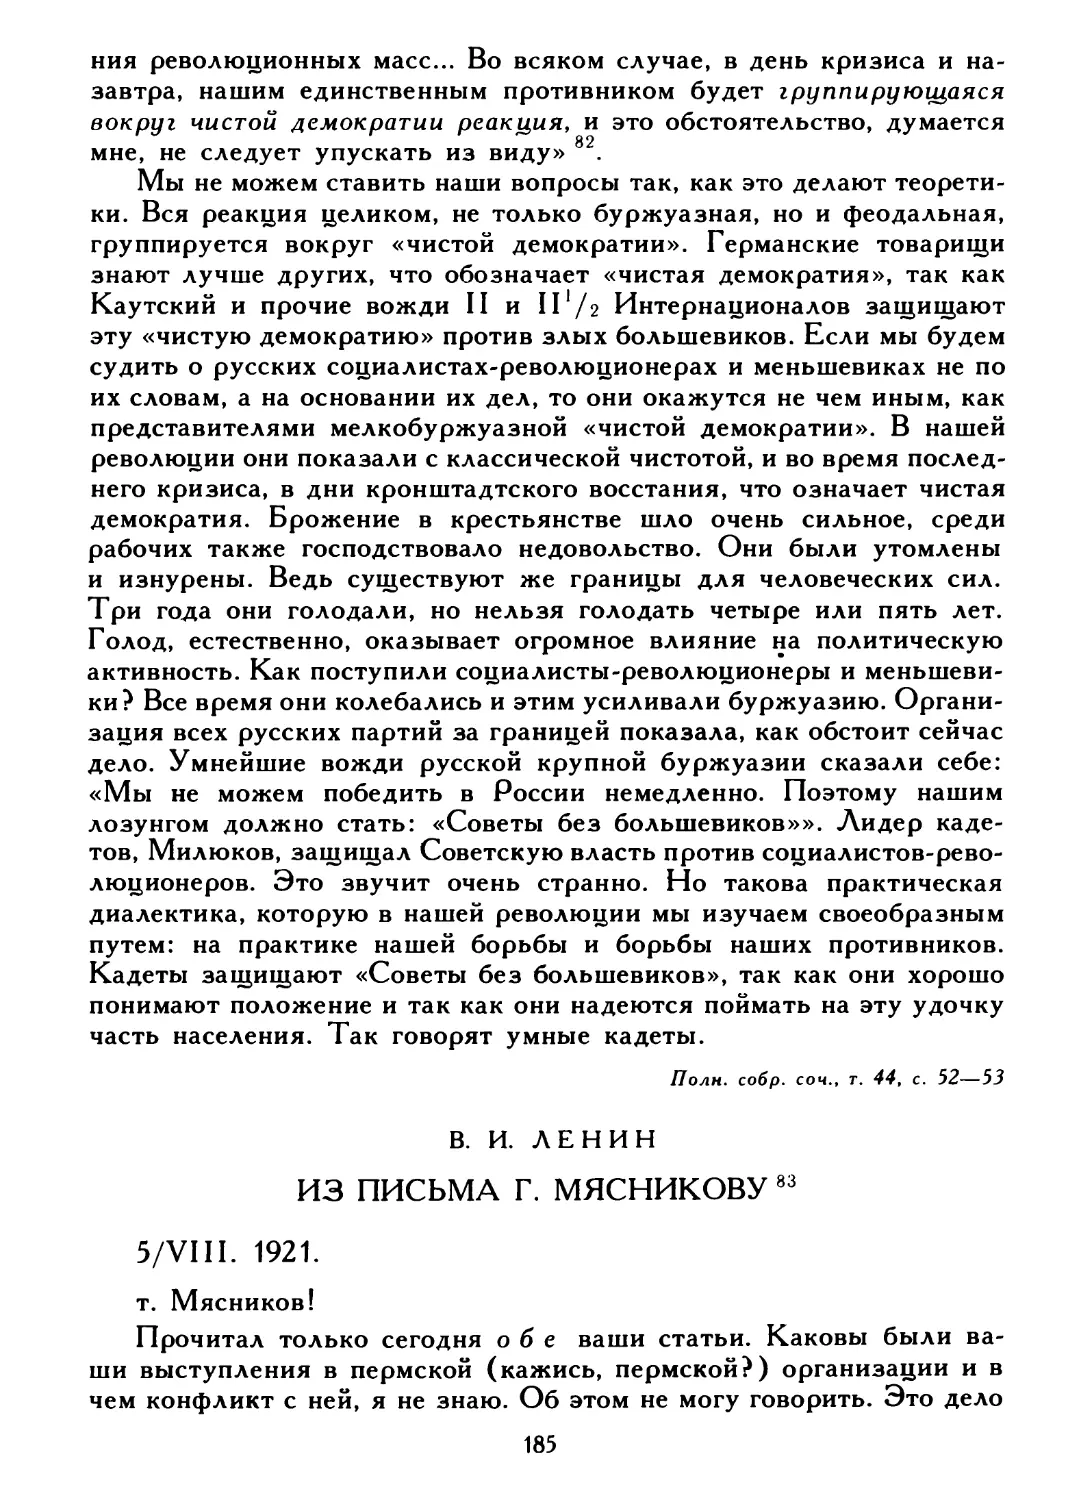 В. И. Ленин. Из письма Г. Мясникову, 5 августа 1921 г.